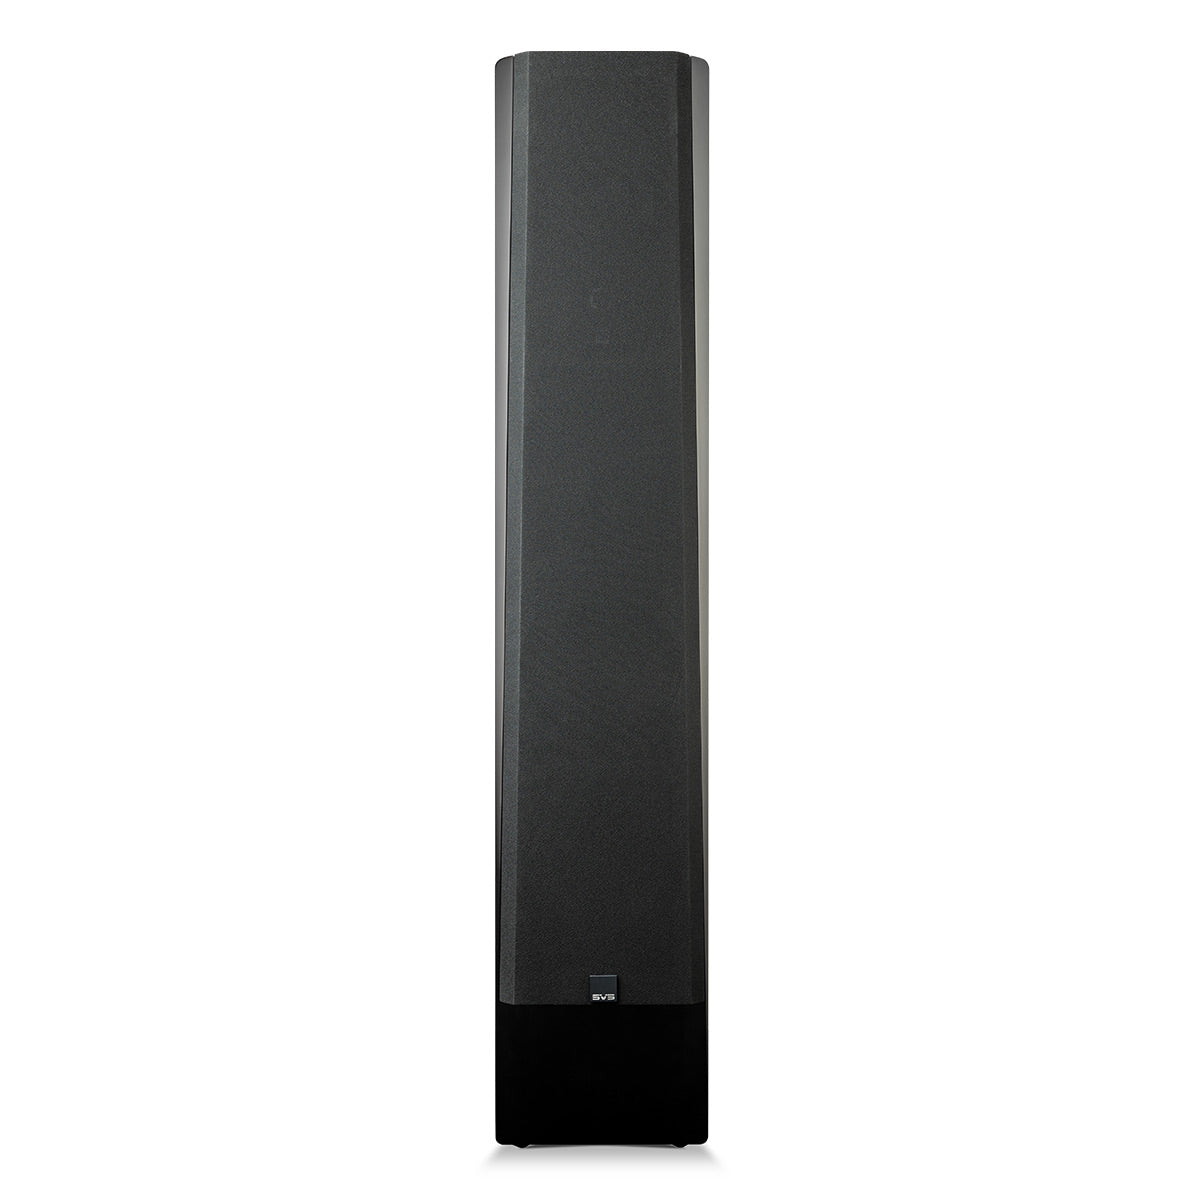 SVS Prime Pinnacle Floorstanding Speakers - Pair (Black Ash)